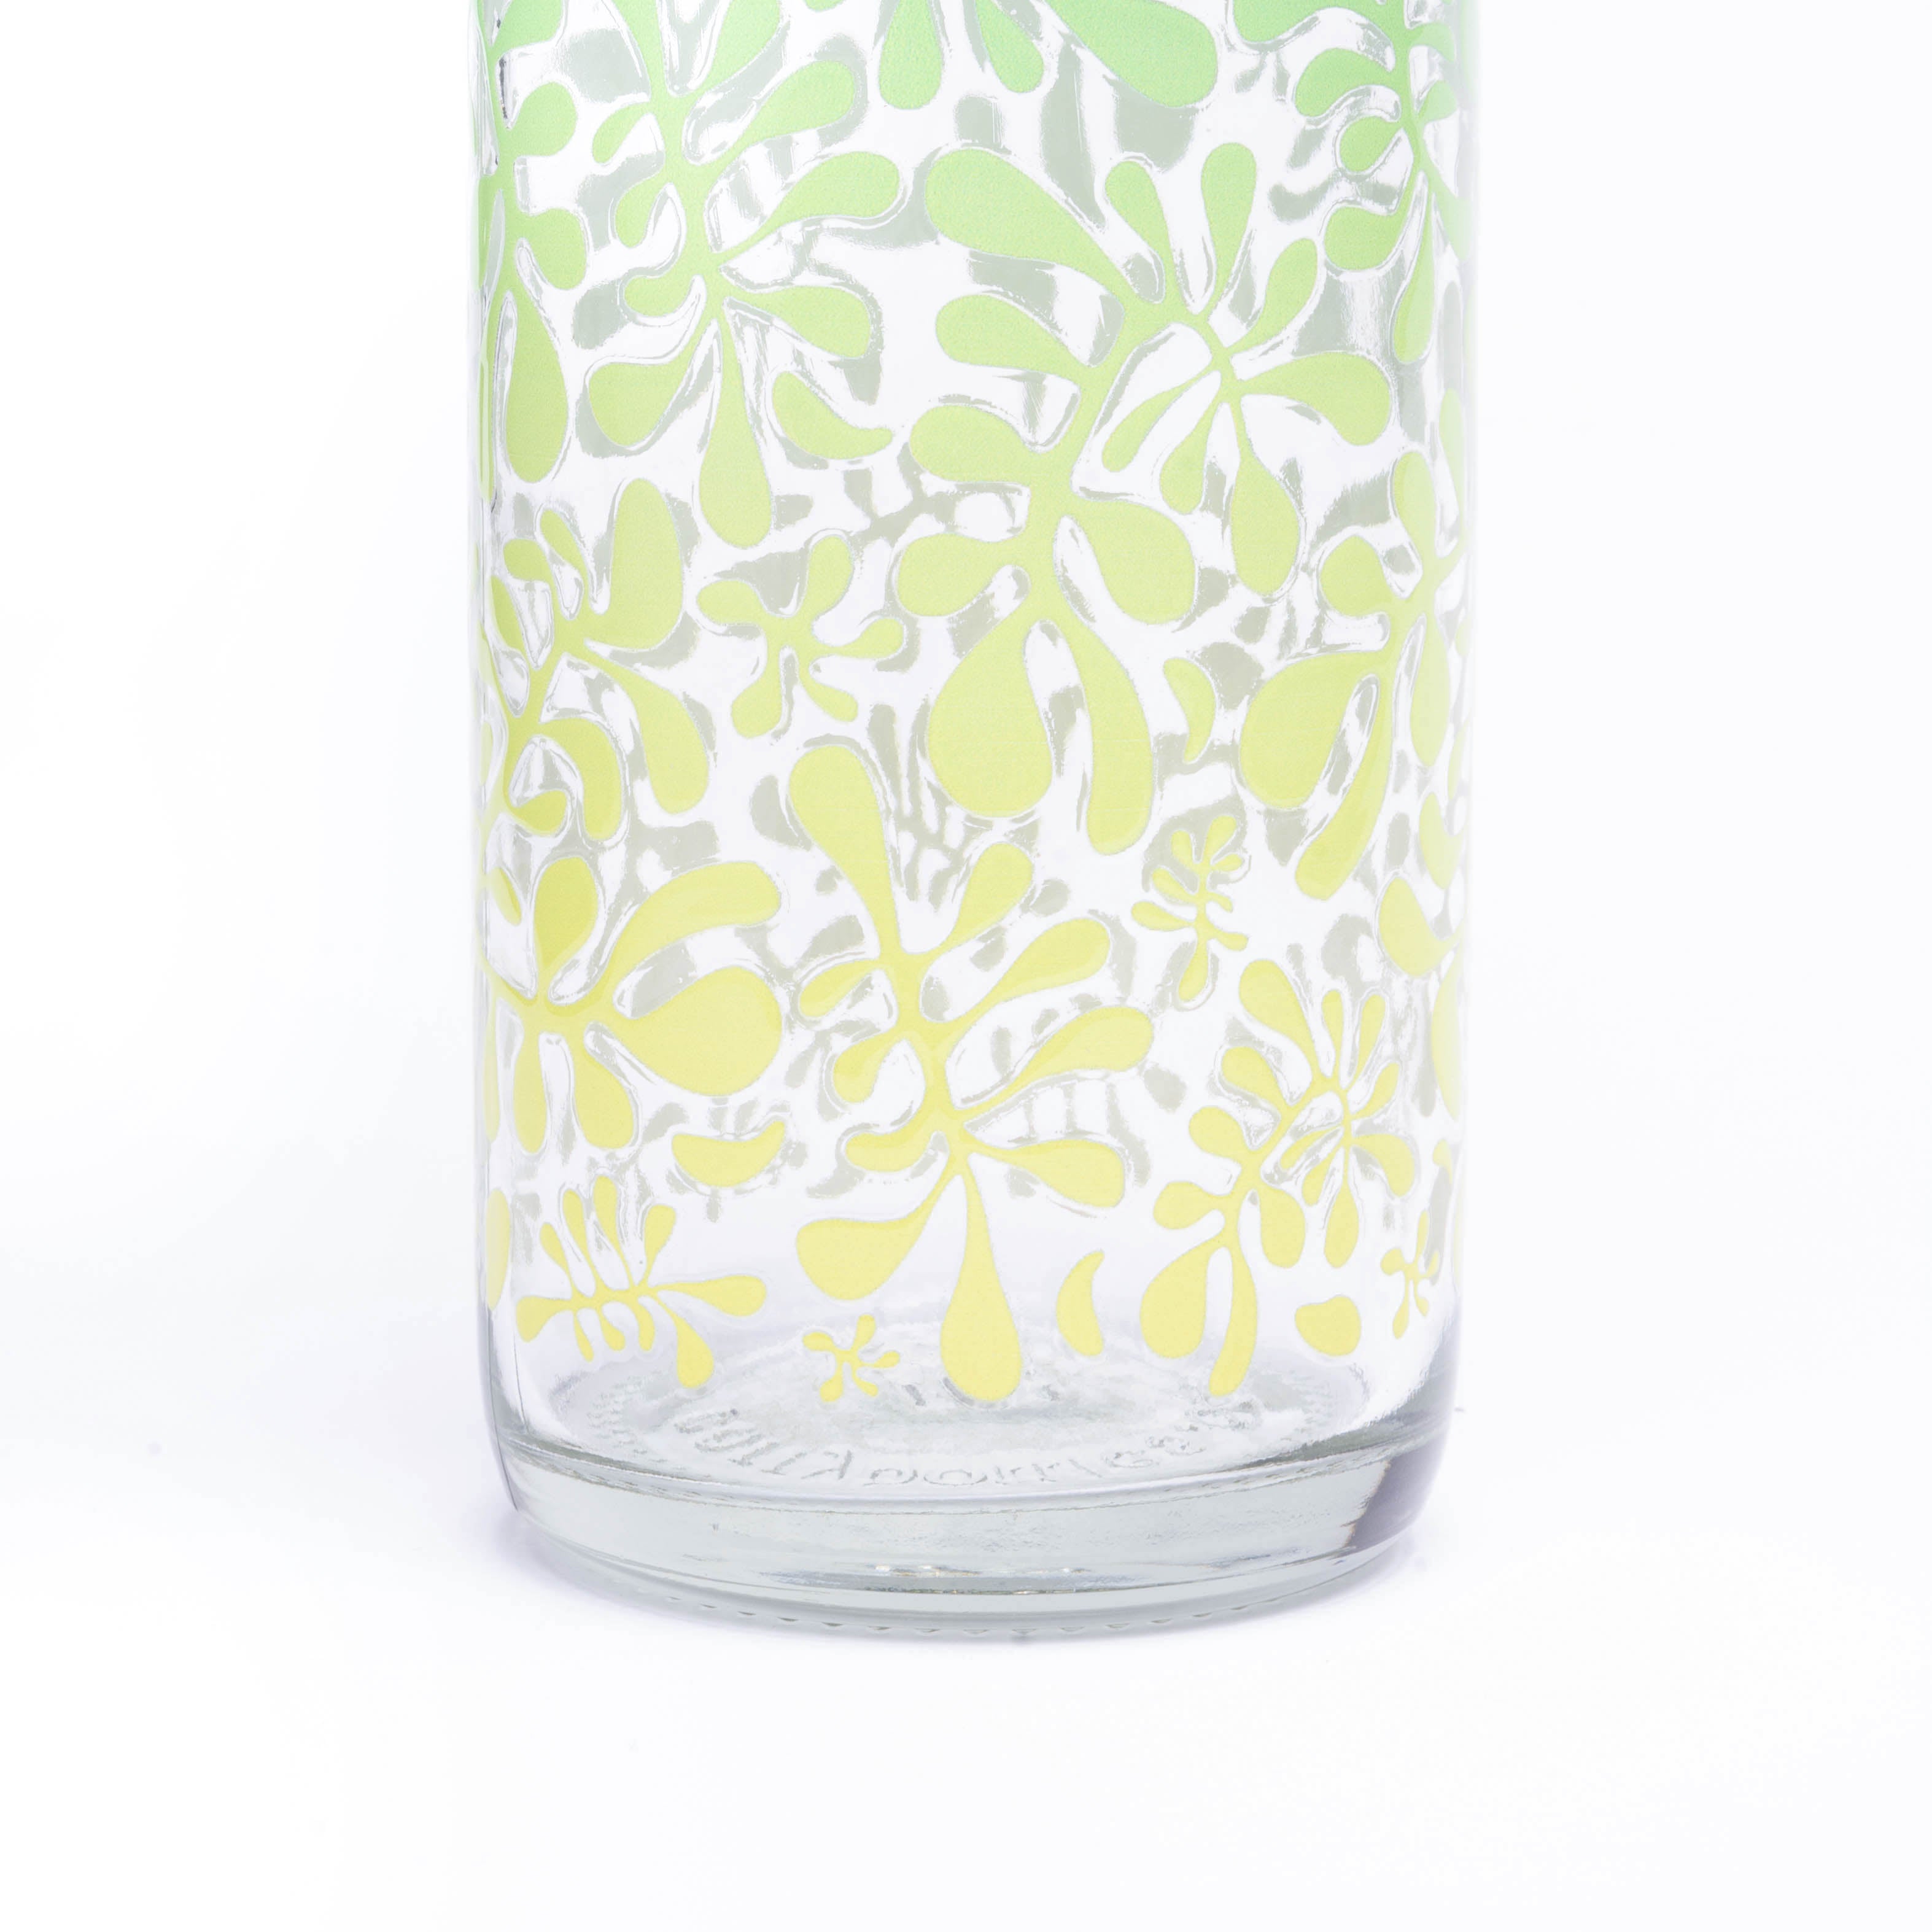 Sea Forest Trinkflasche aus Glas 0,7L in buntem Natur-Design mit robustem Flaschenboden